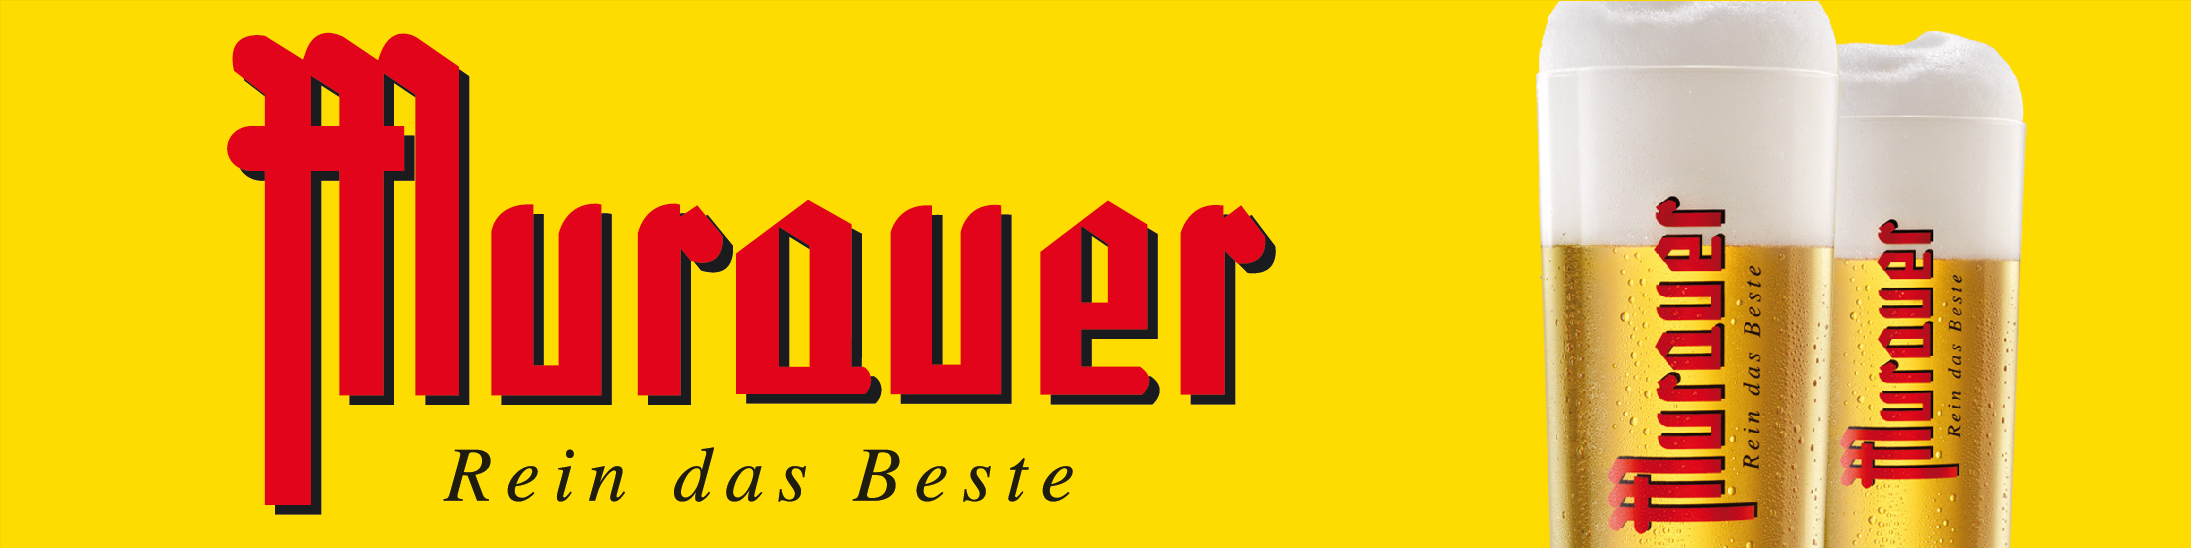 Logo Murauerbier